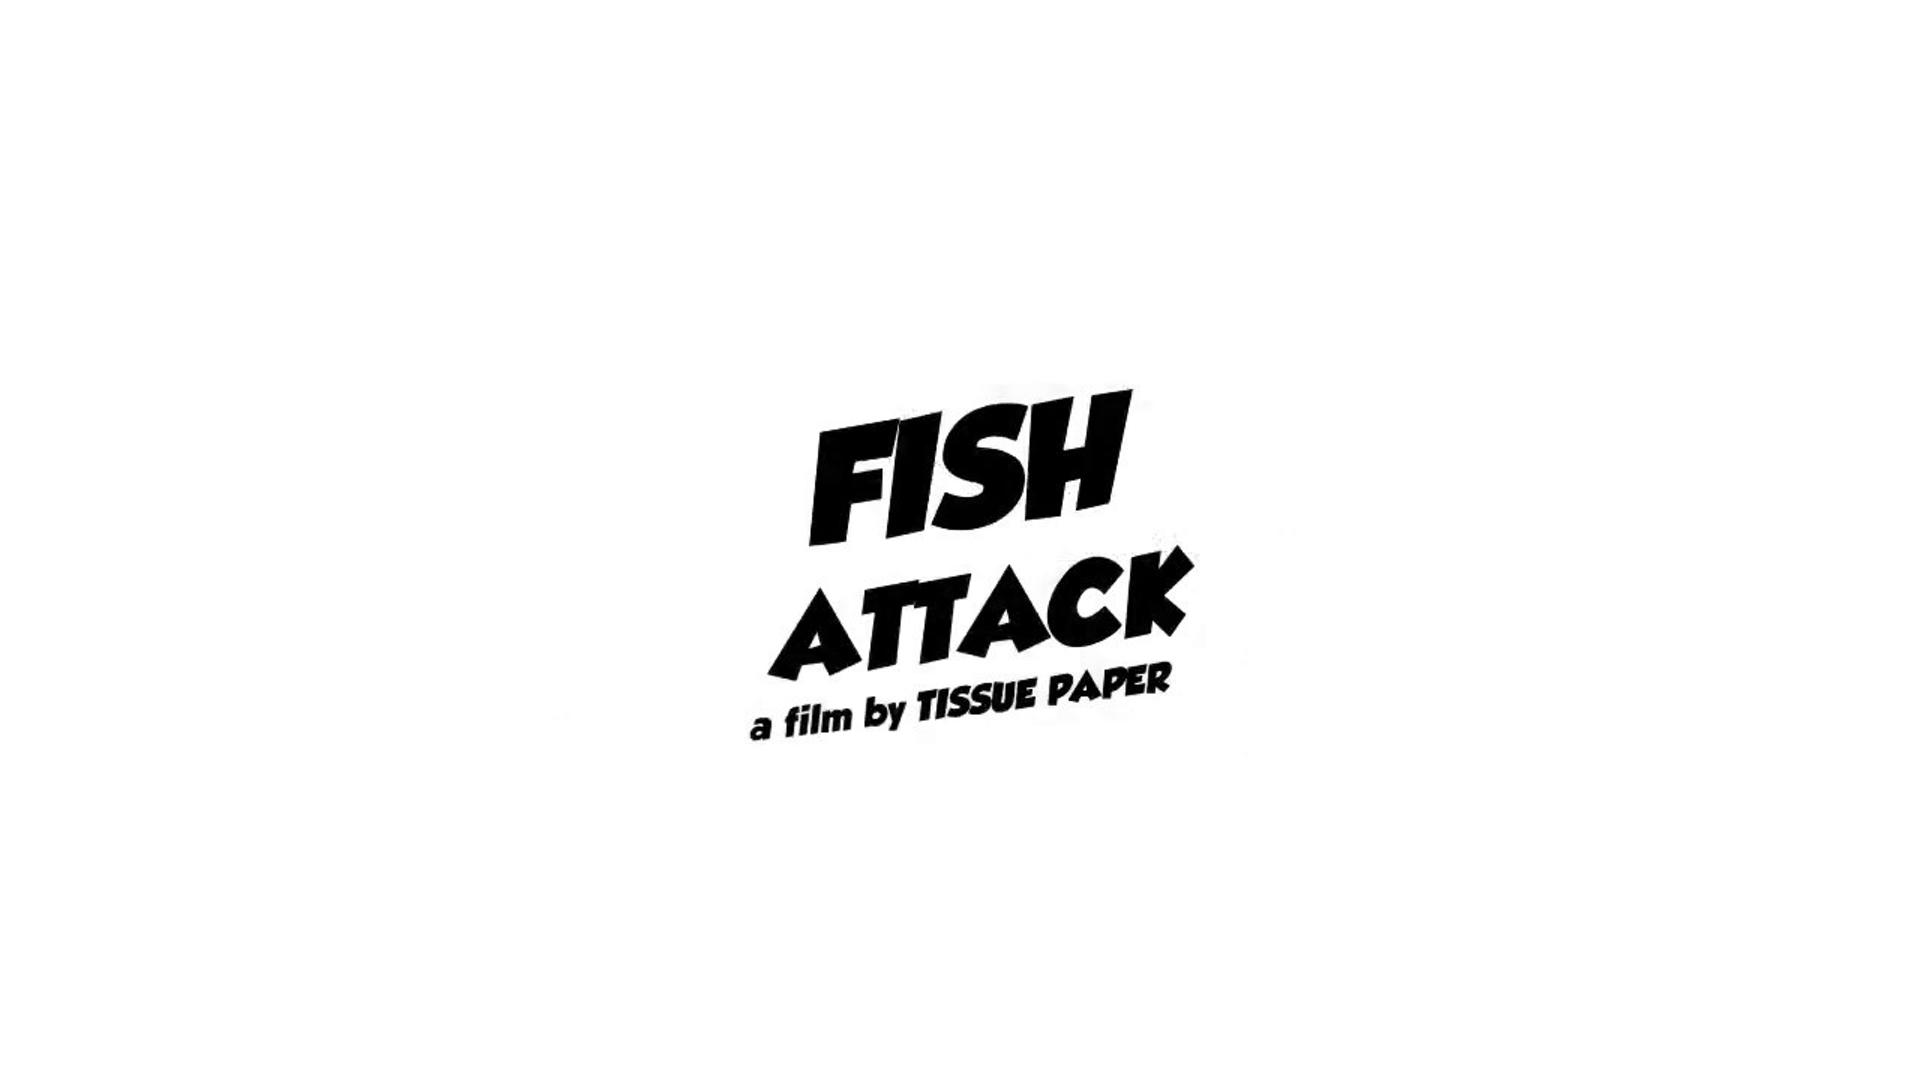 Fish attack